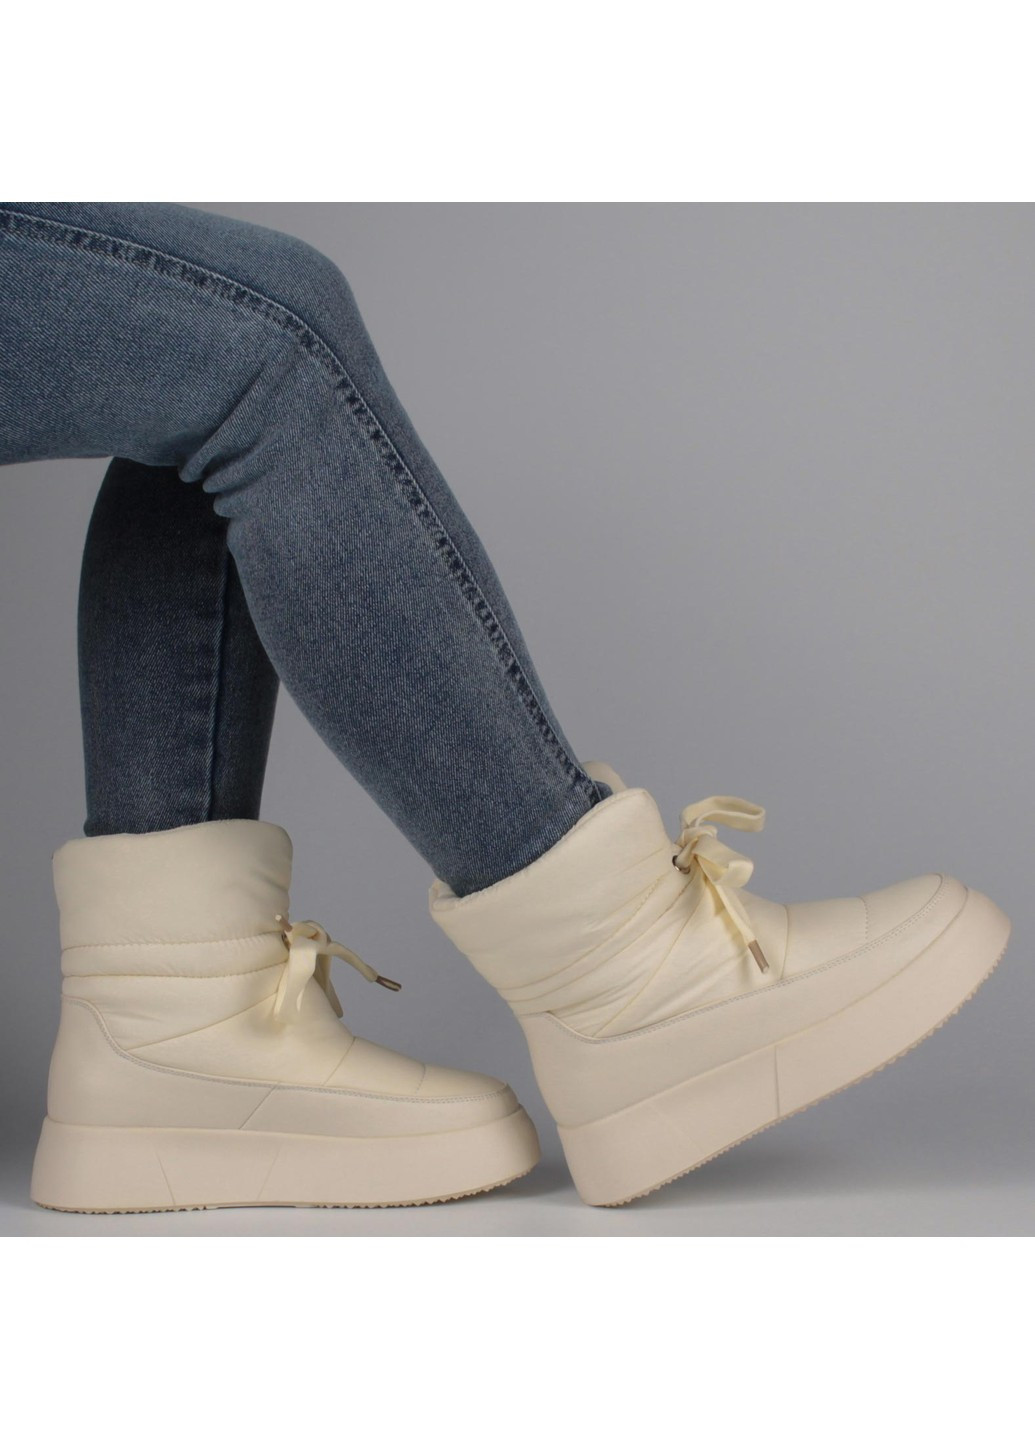 Зимние женские ботинки на платформе 198506 Meglias тканевые